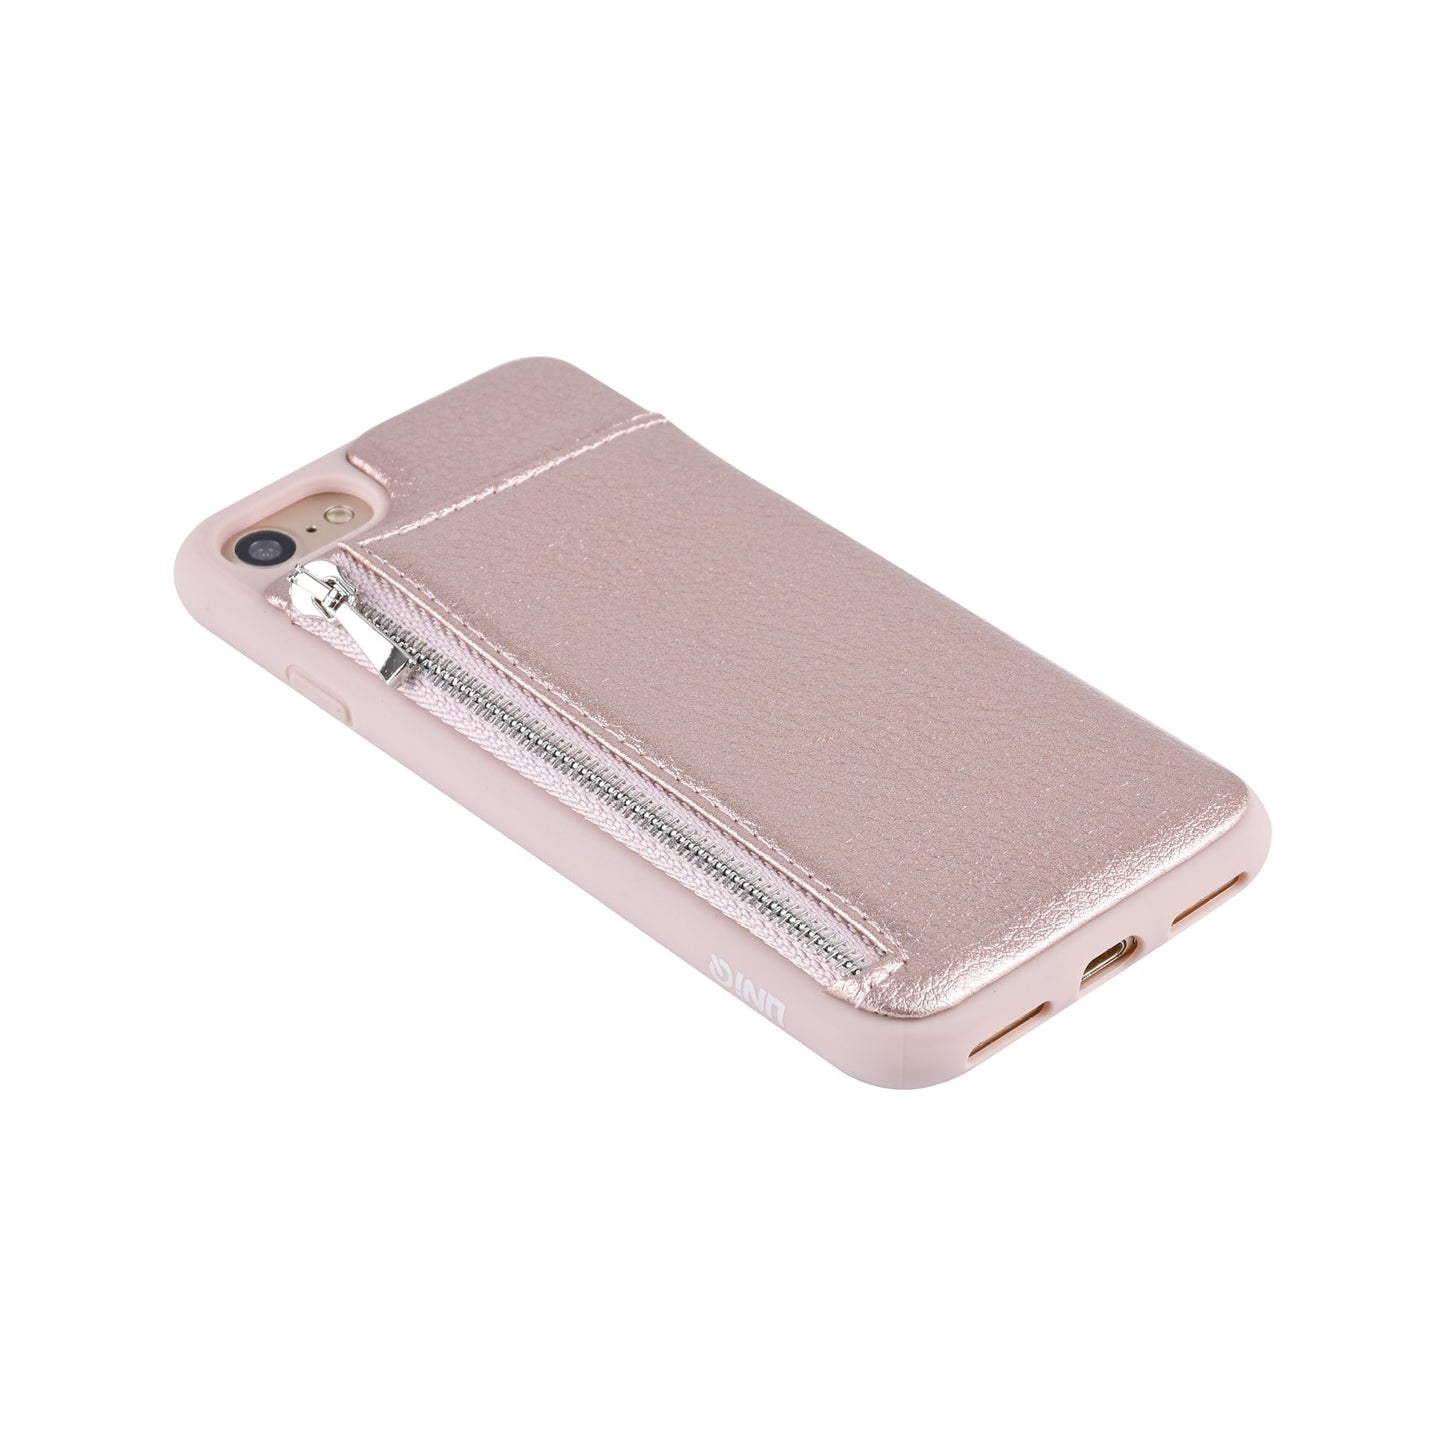 Backcover hoesje met rits voor de iPhone SE (2022/2020) iPhone 8/ iPhone 7 - Roze